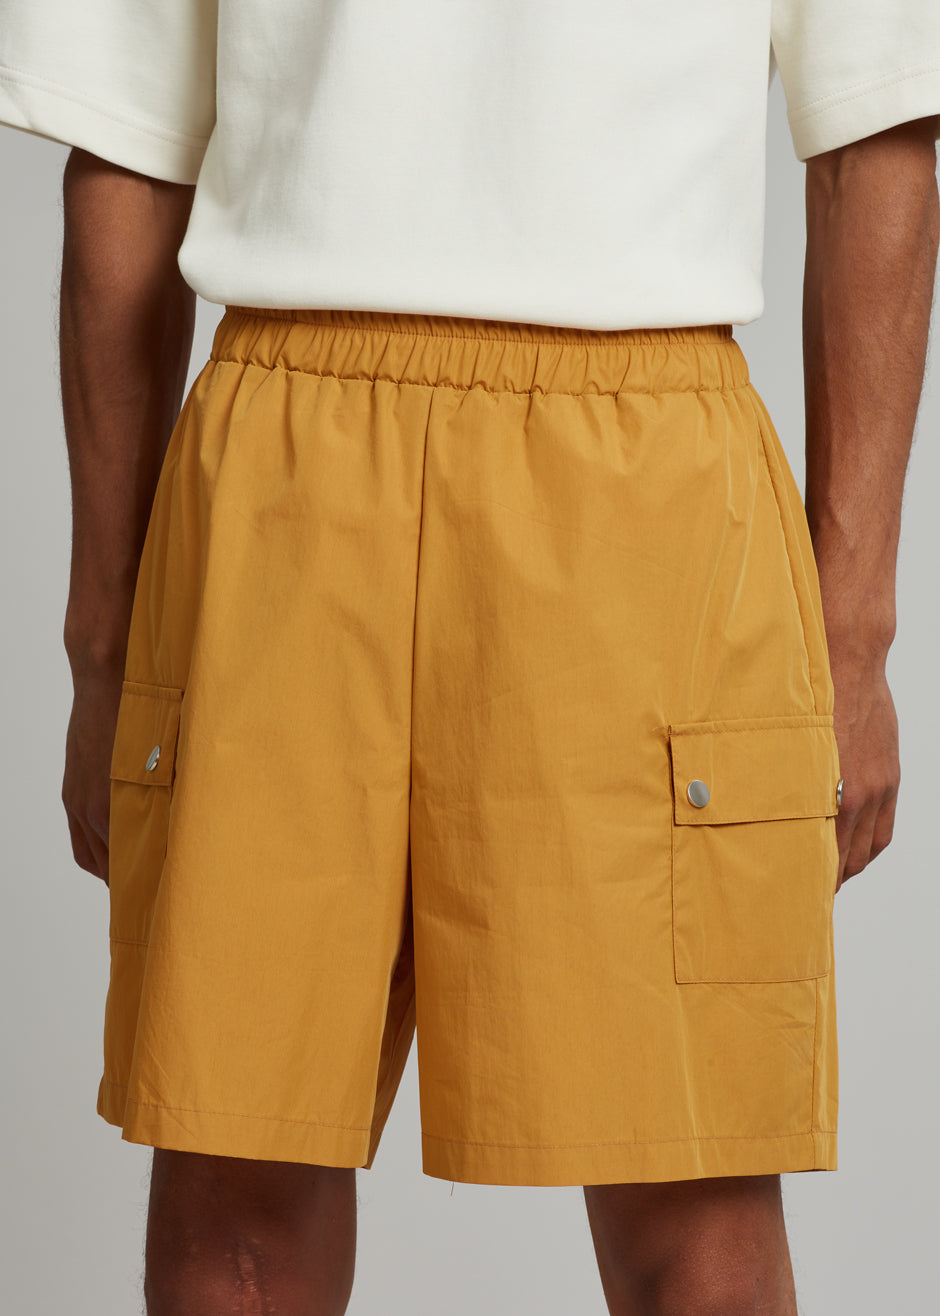 Spence Shorts - Orange - 5